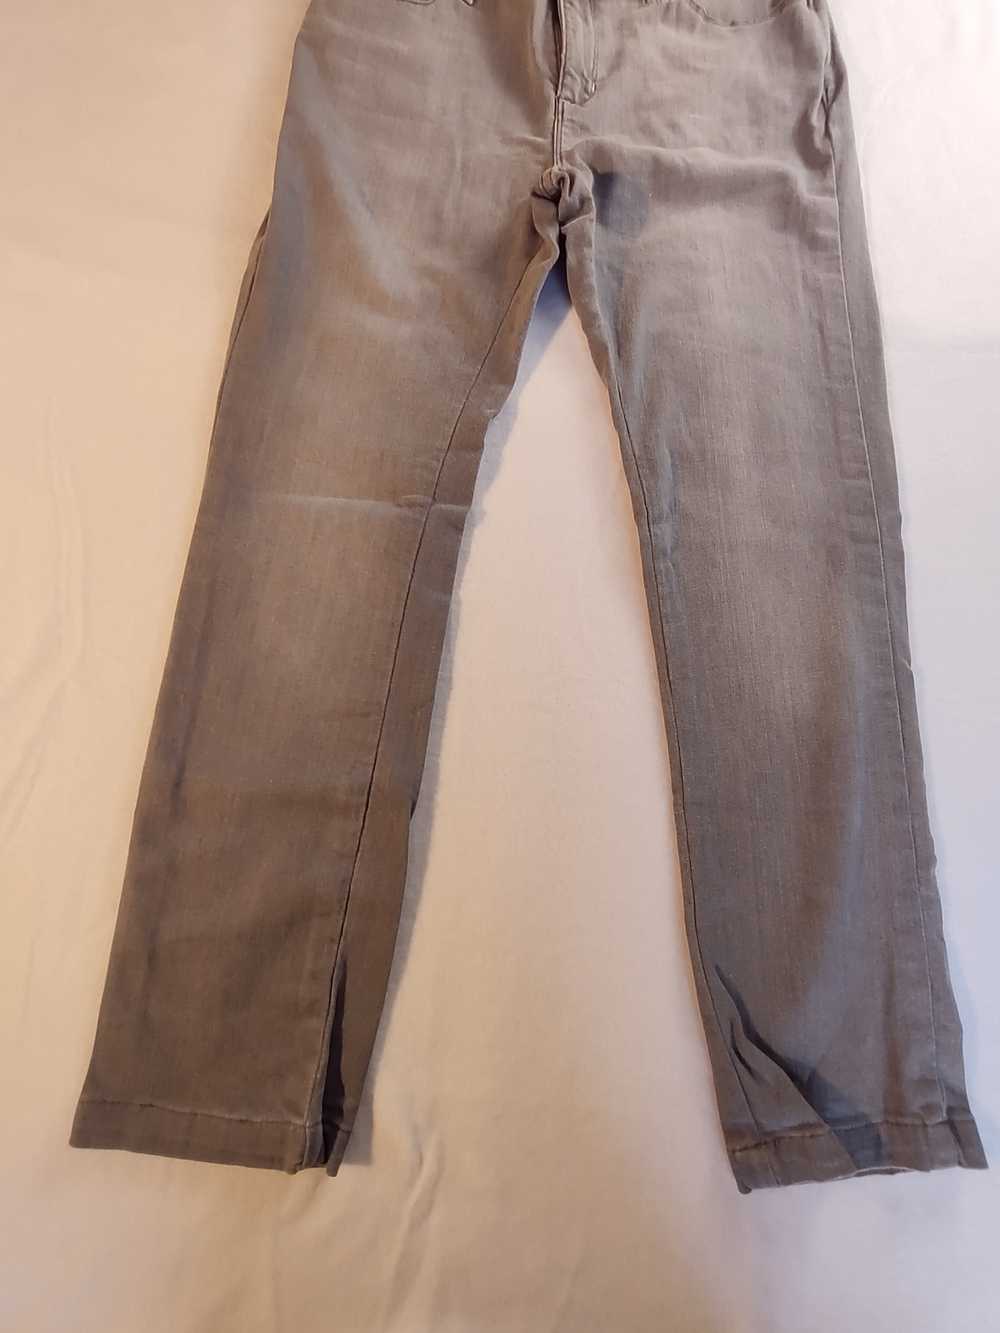 Lee Lee Perfect Fit Just Below Waist denim jeans … - image 2